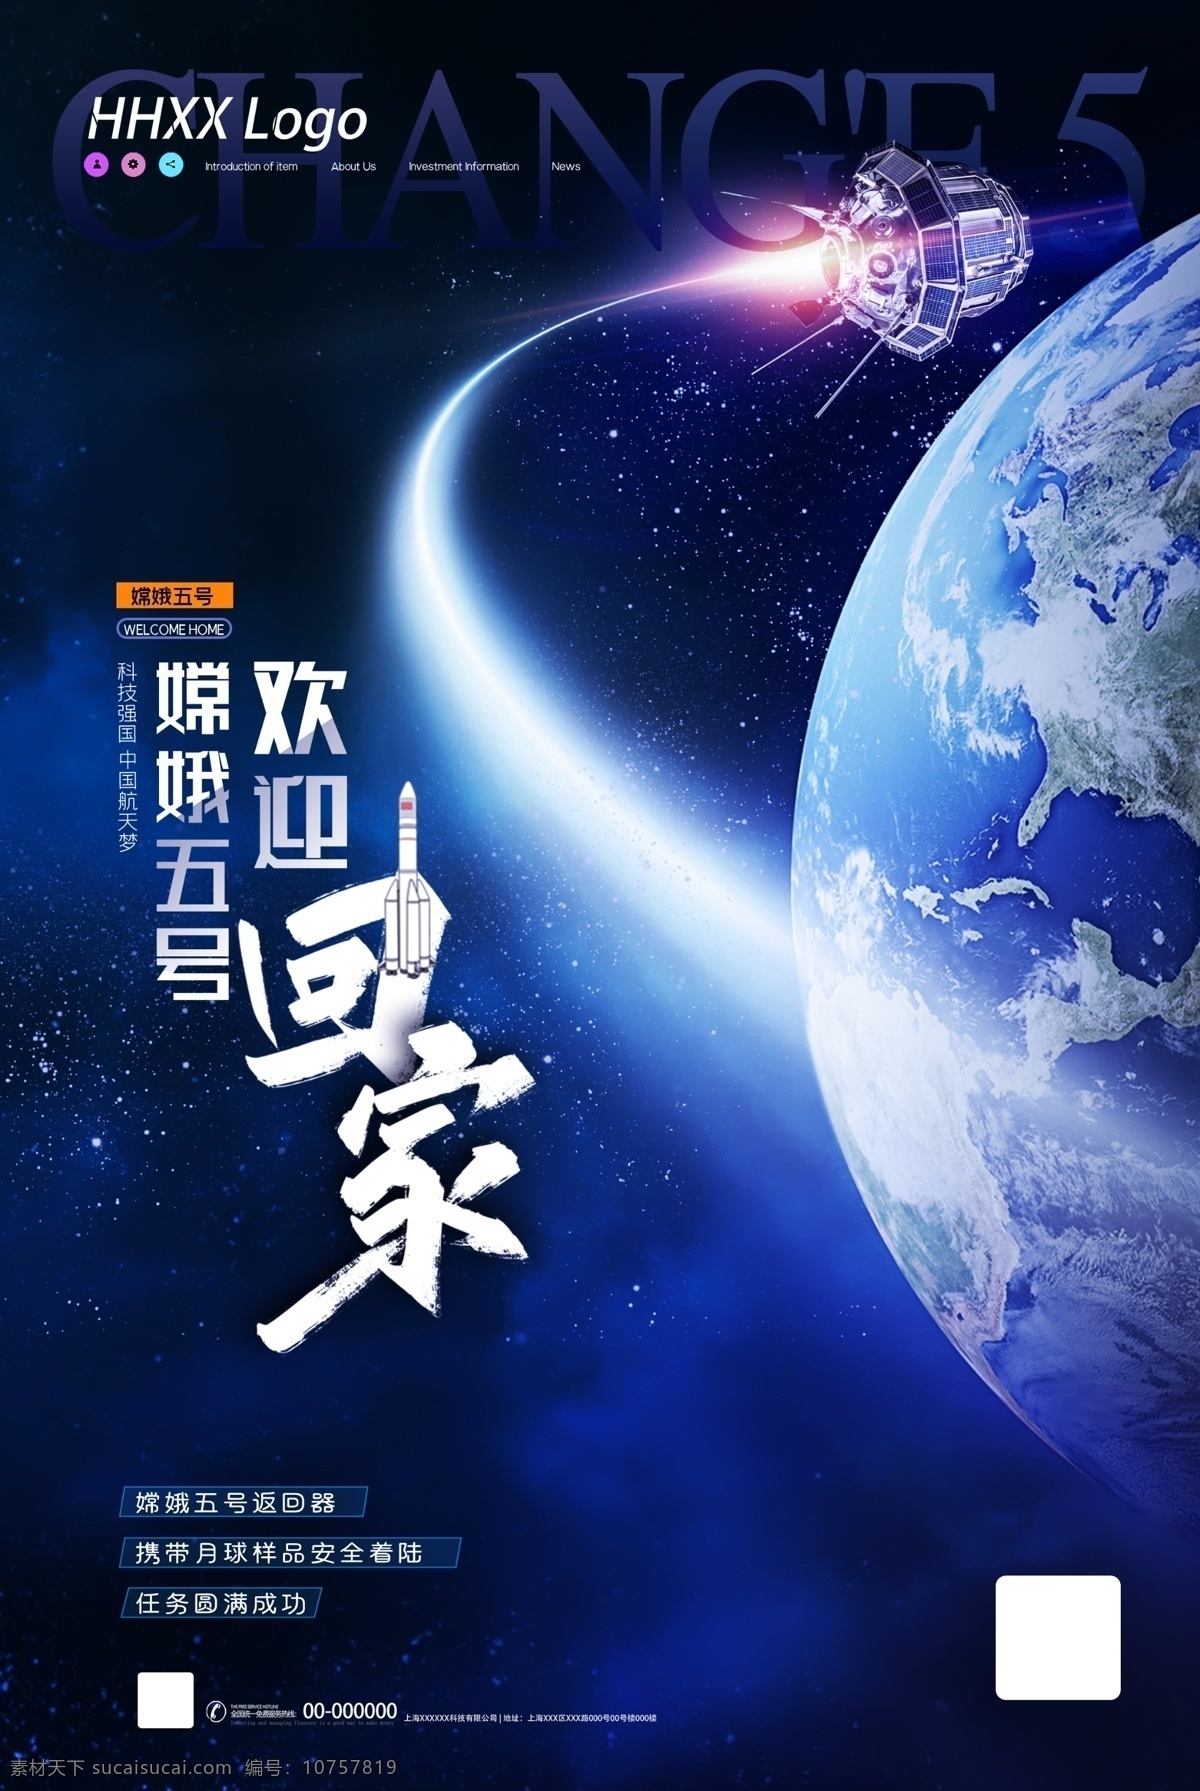 嫦娥五号图片 嫦娥五号 探月 火箭 发射 中国航天 星球 月球 月球车 嫦娥 五号 长征5号 火箭发射 成功发射 海南文昌 发射基地 航天航空 宇宙 探索 太空 地球 着陆 月球探测器 月球轨道